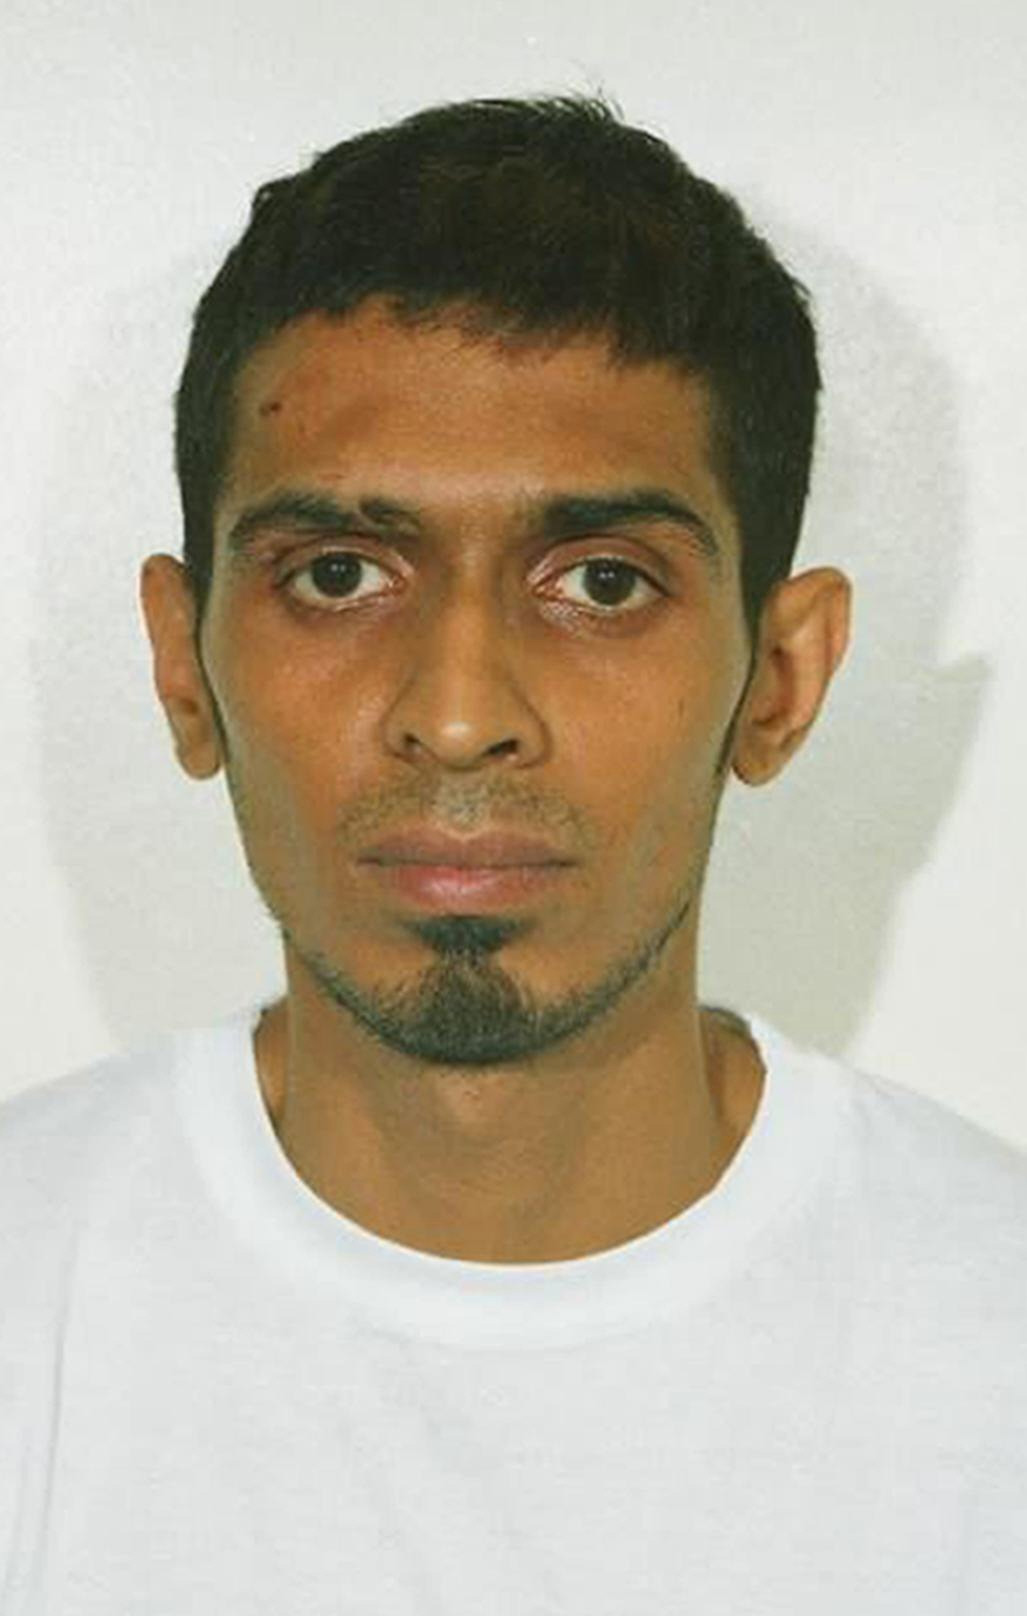 Qaisar Shaffi war der erste, der 2012 vom Bewährungsausschuss zur Freilassung empfohlen wurde